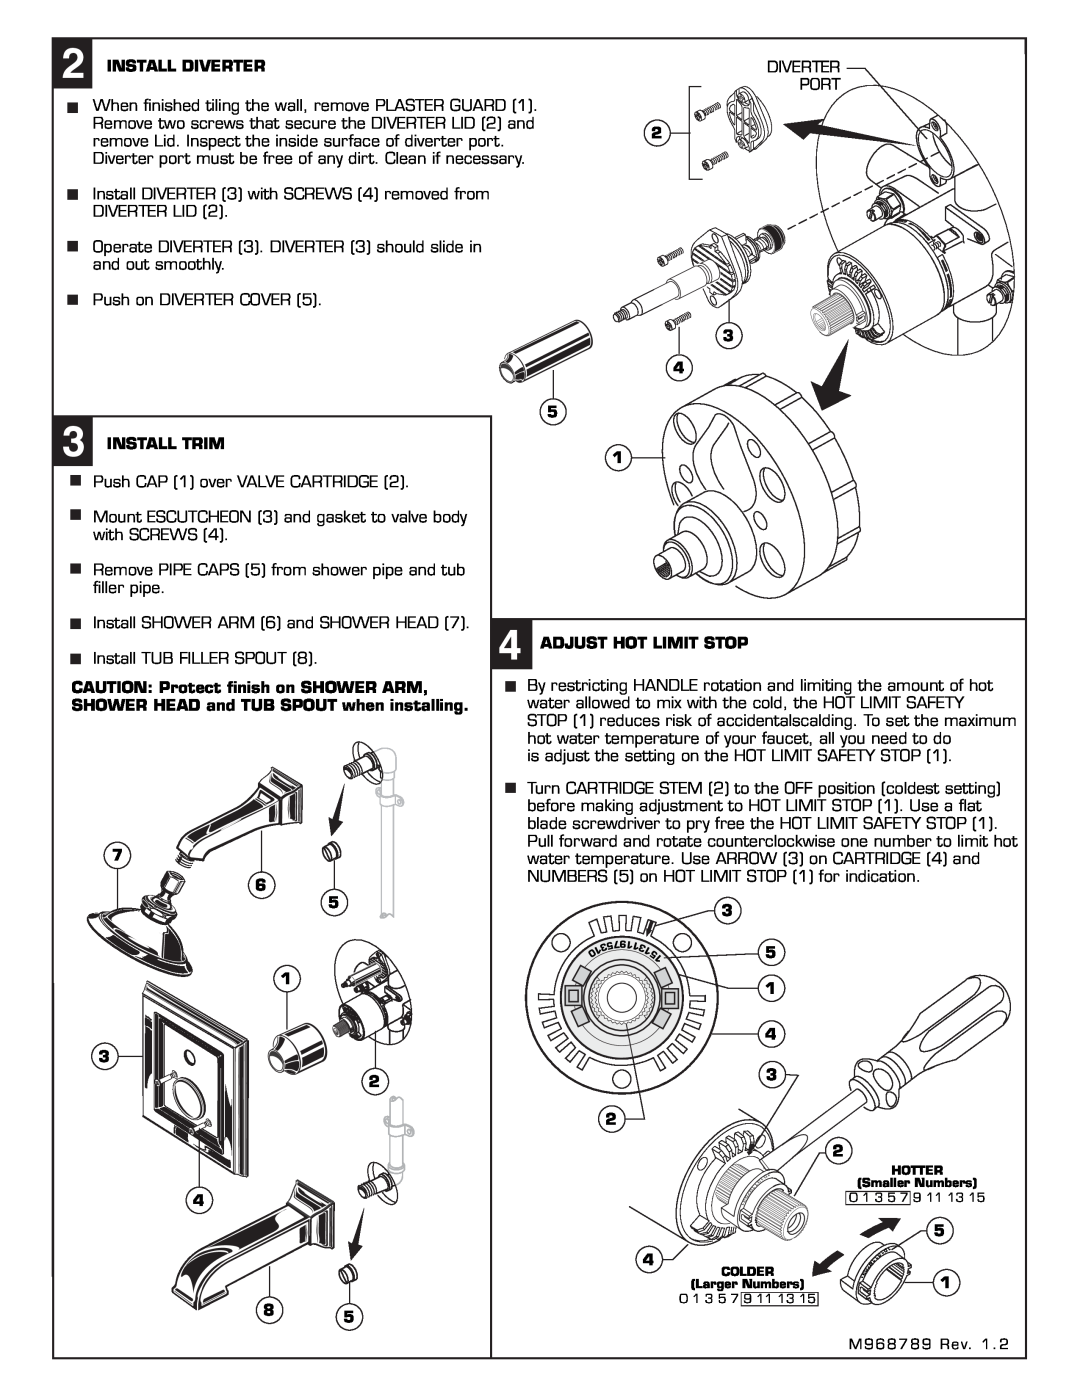 American Standard 2555.602 installation instructions Install Diverter 